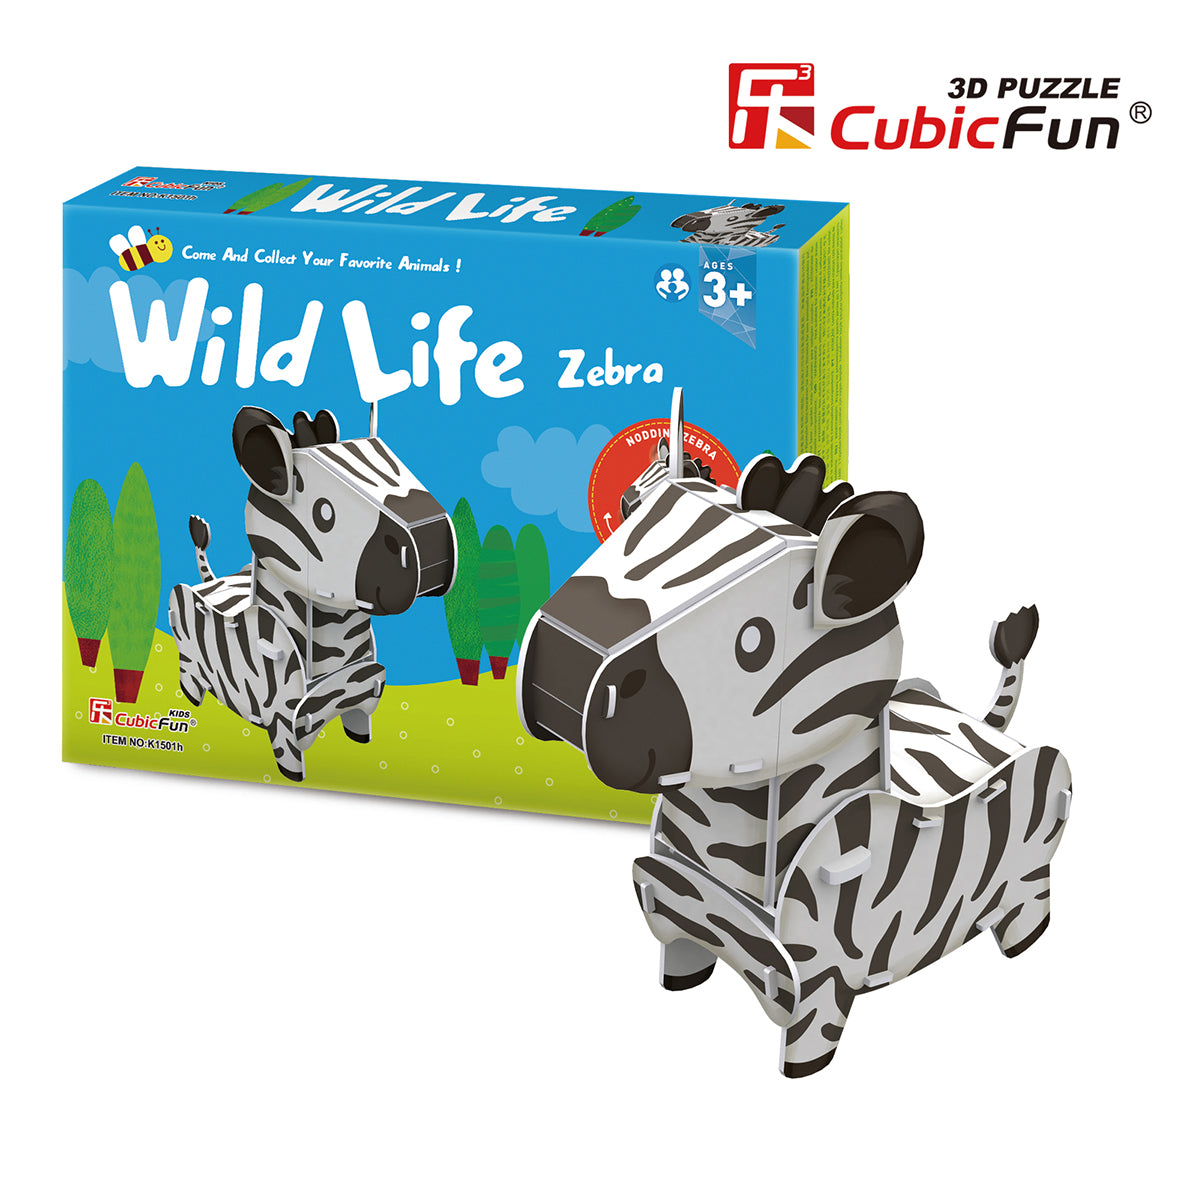 Wild Life Series - Zebra, 3D Puzzle